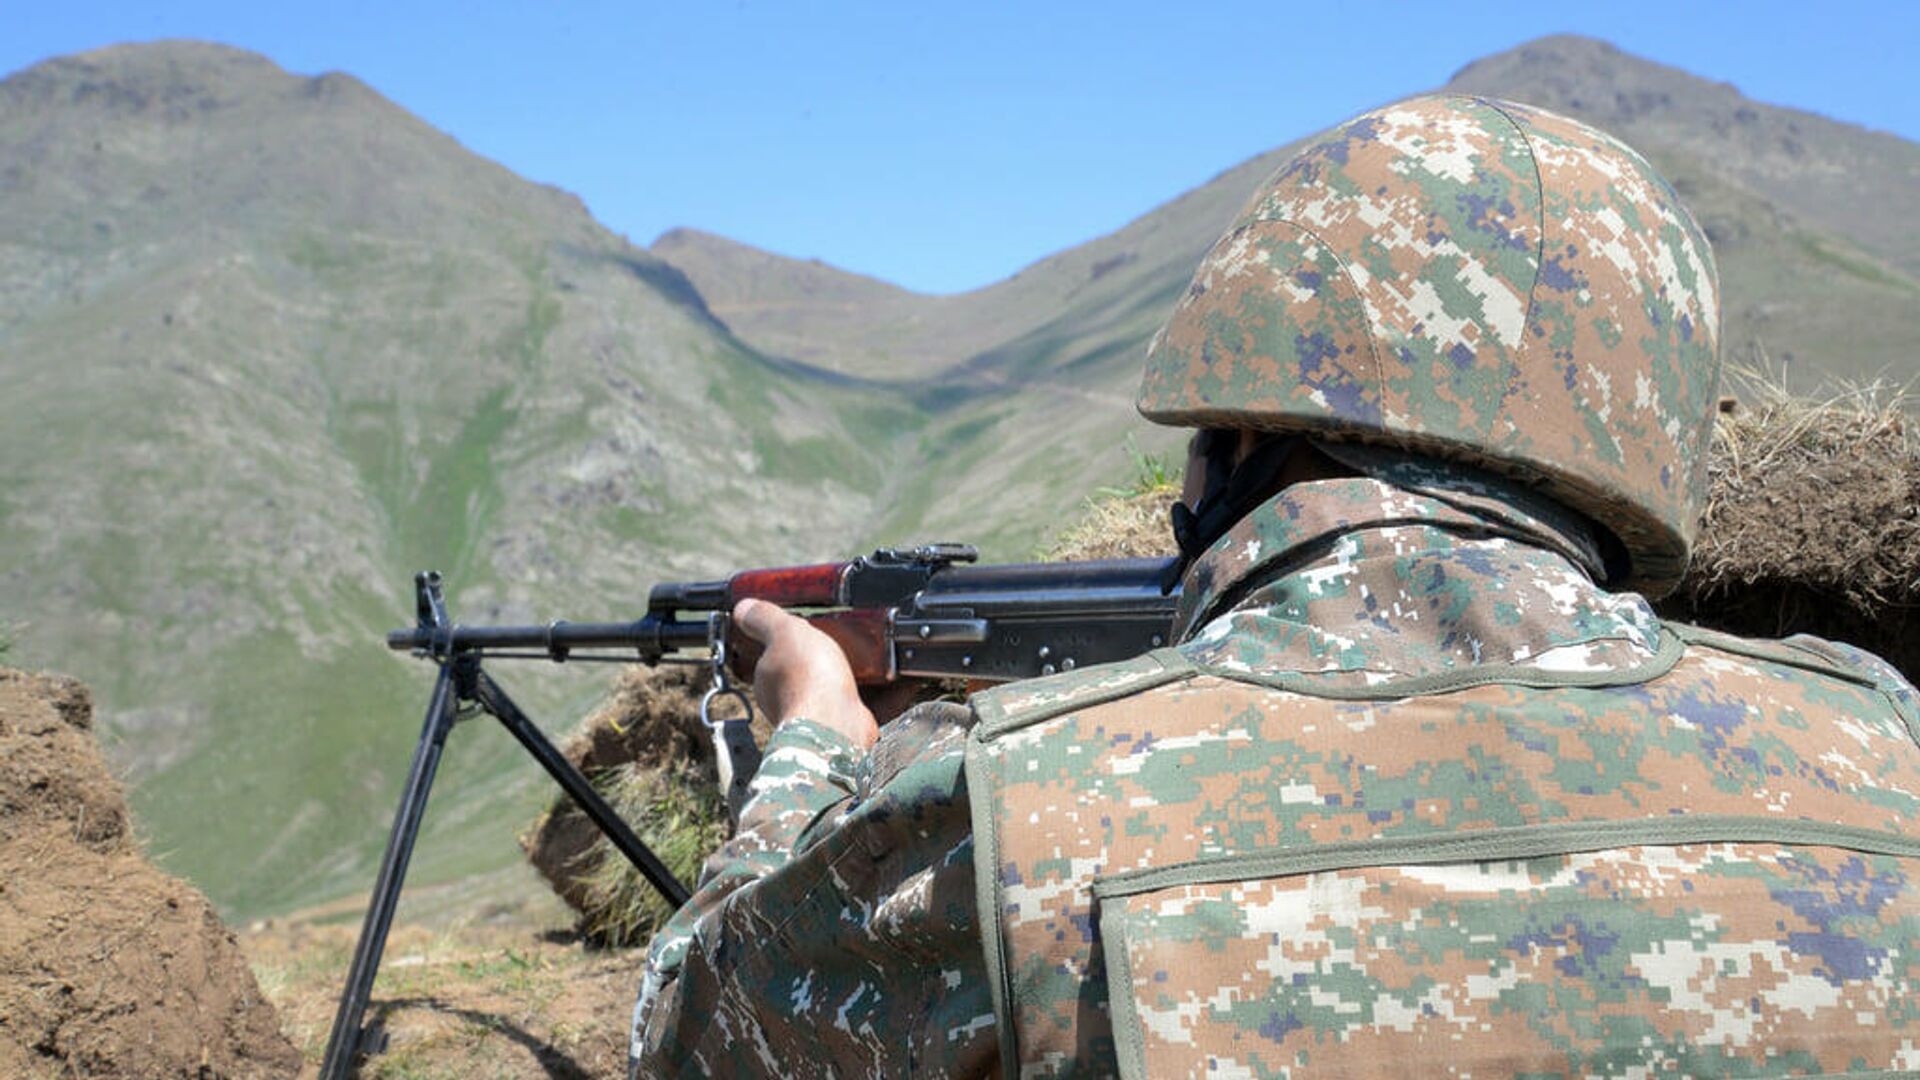 В Армении заявили об обстреле на границе со стороны Азербайджана